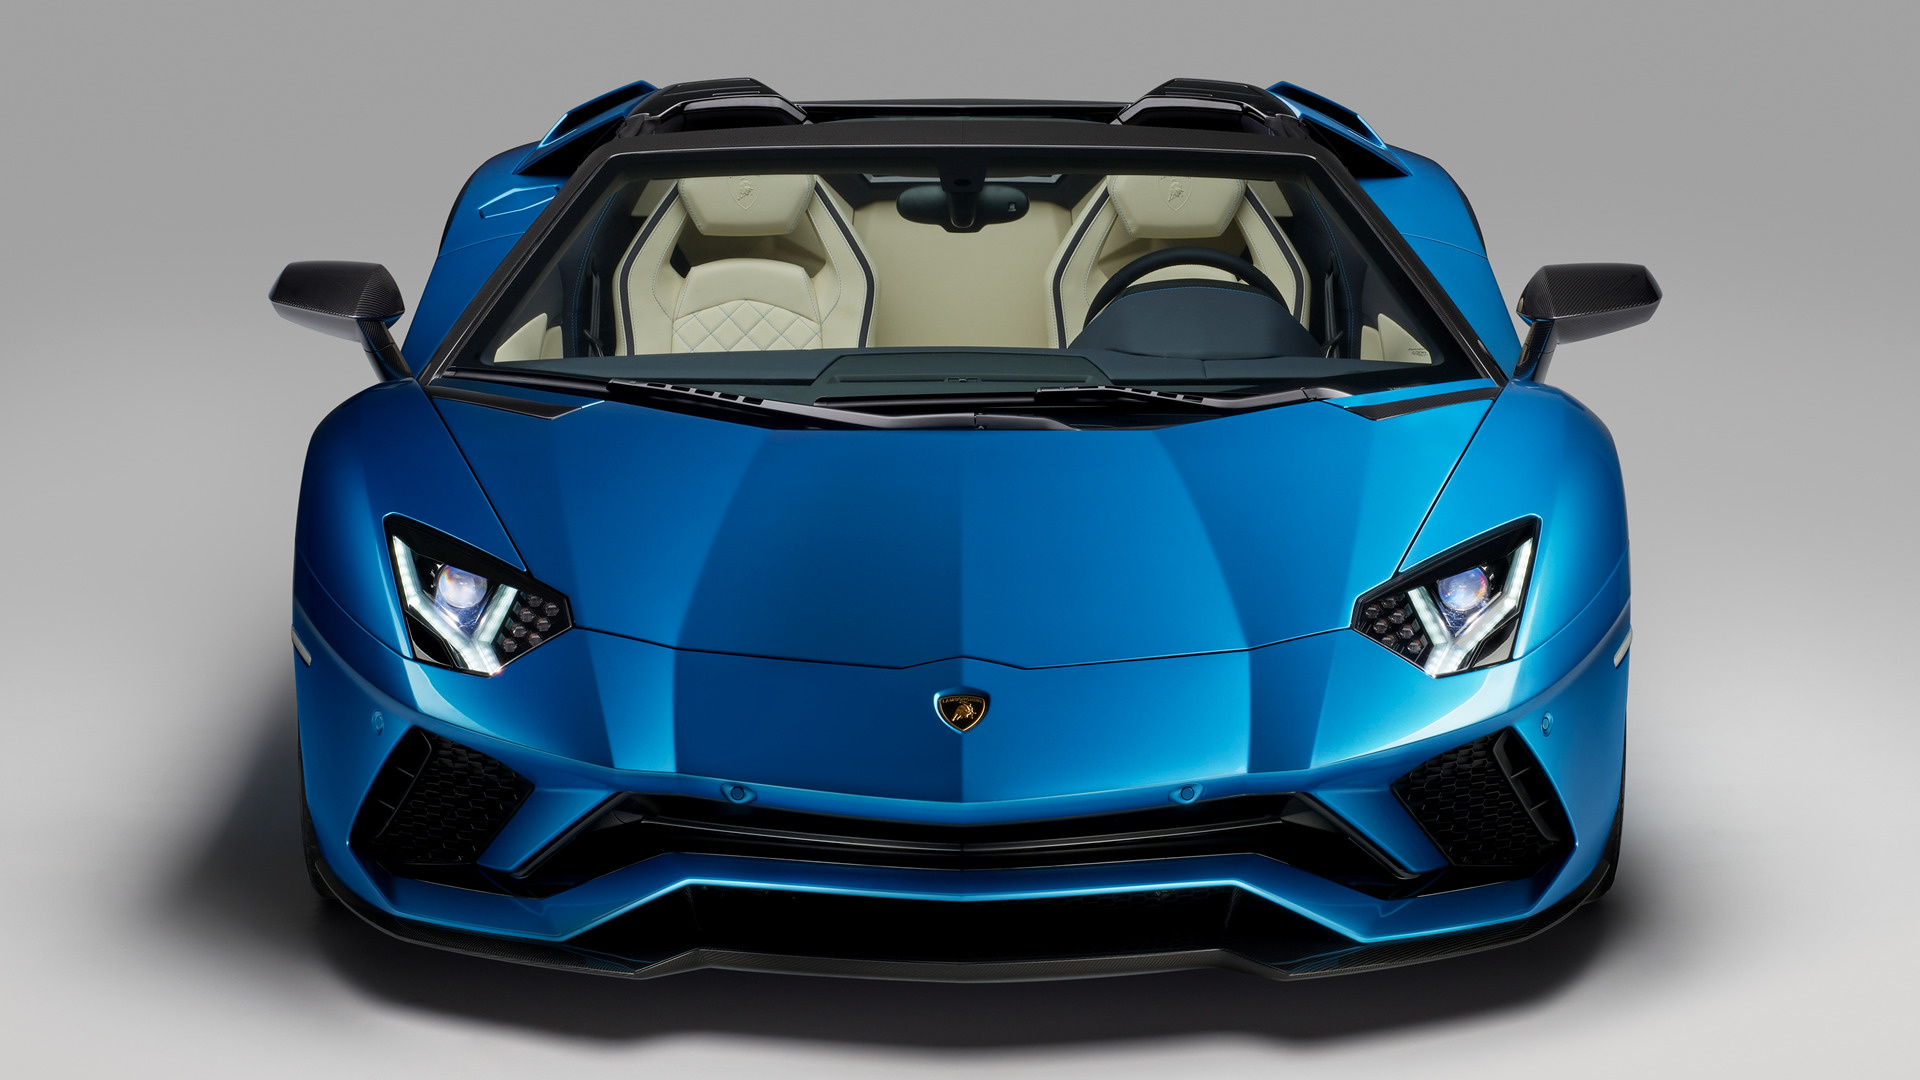 Download mobile wallpaper Lamborghini, Car, Roadster, Supercar, Vehicles, Lamborghini Aventador S for free.